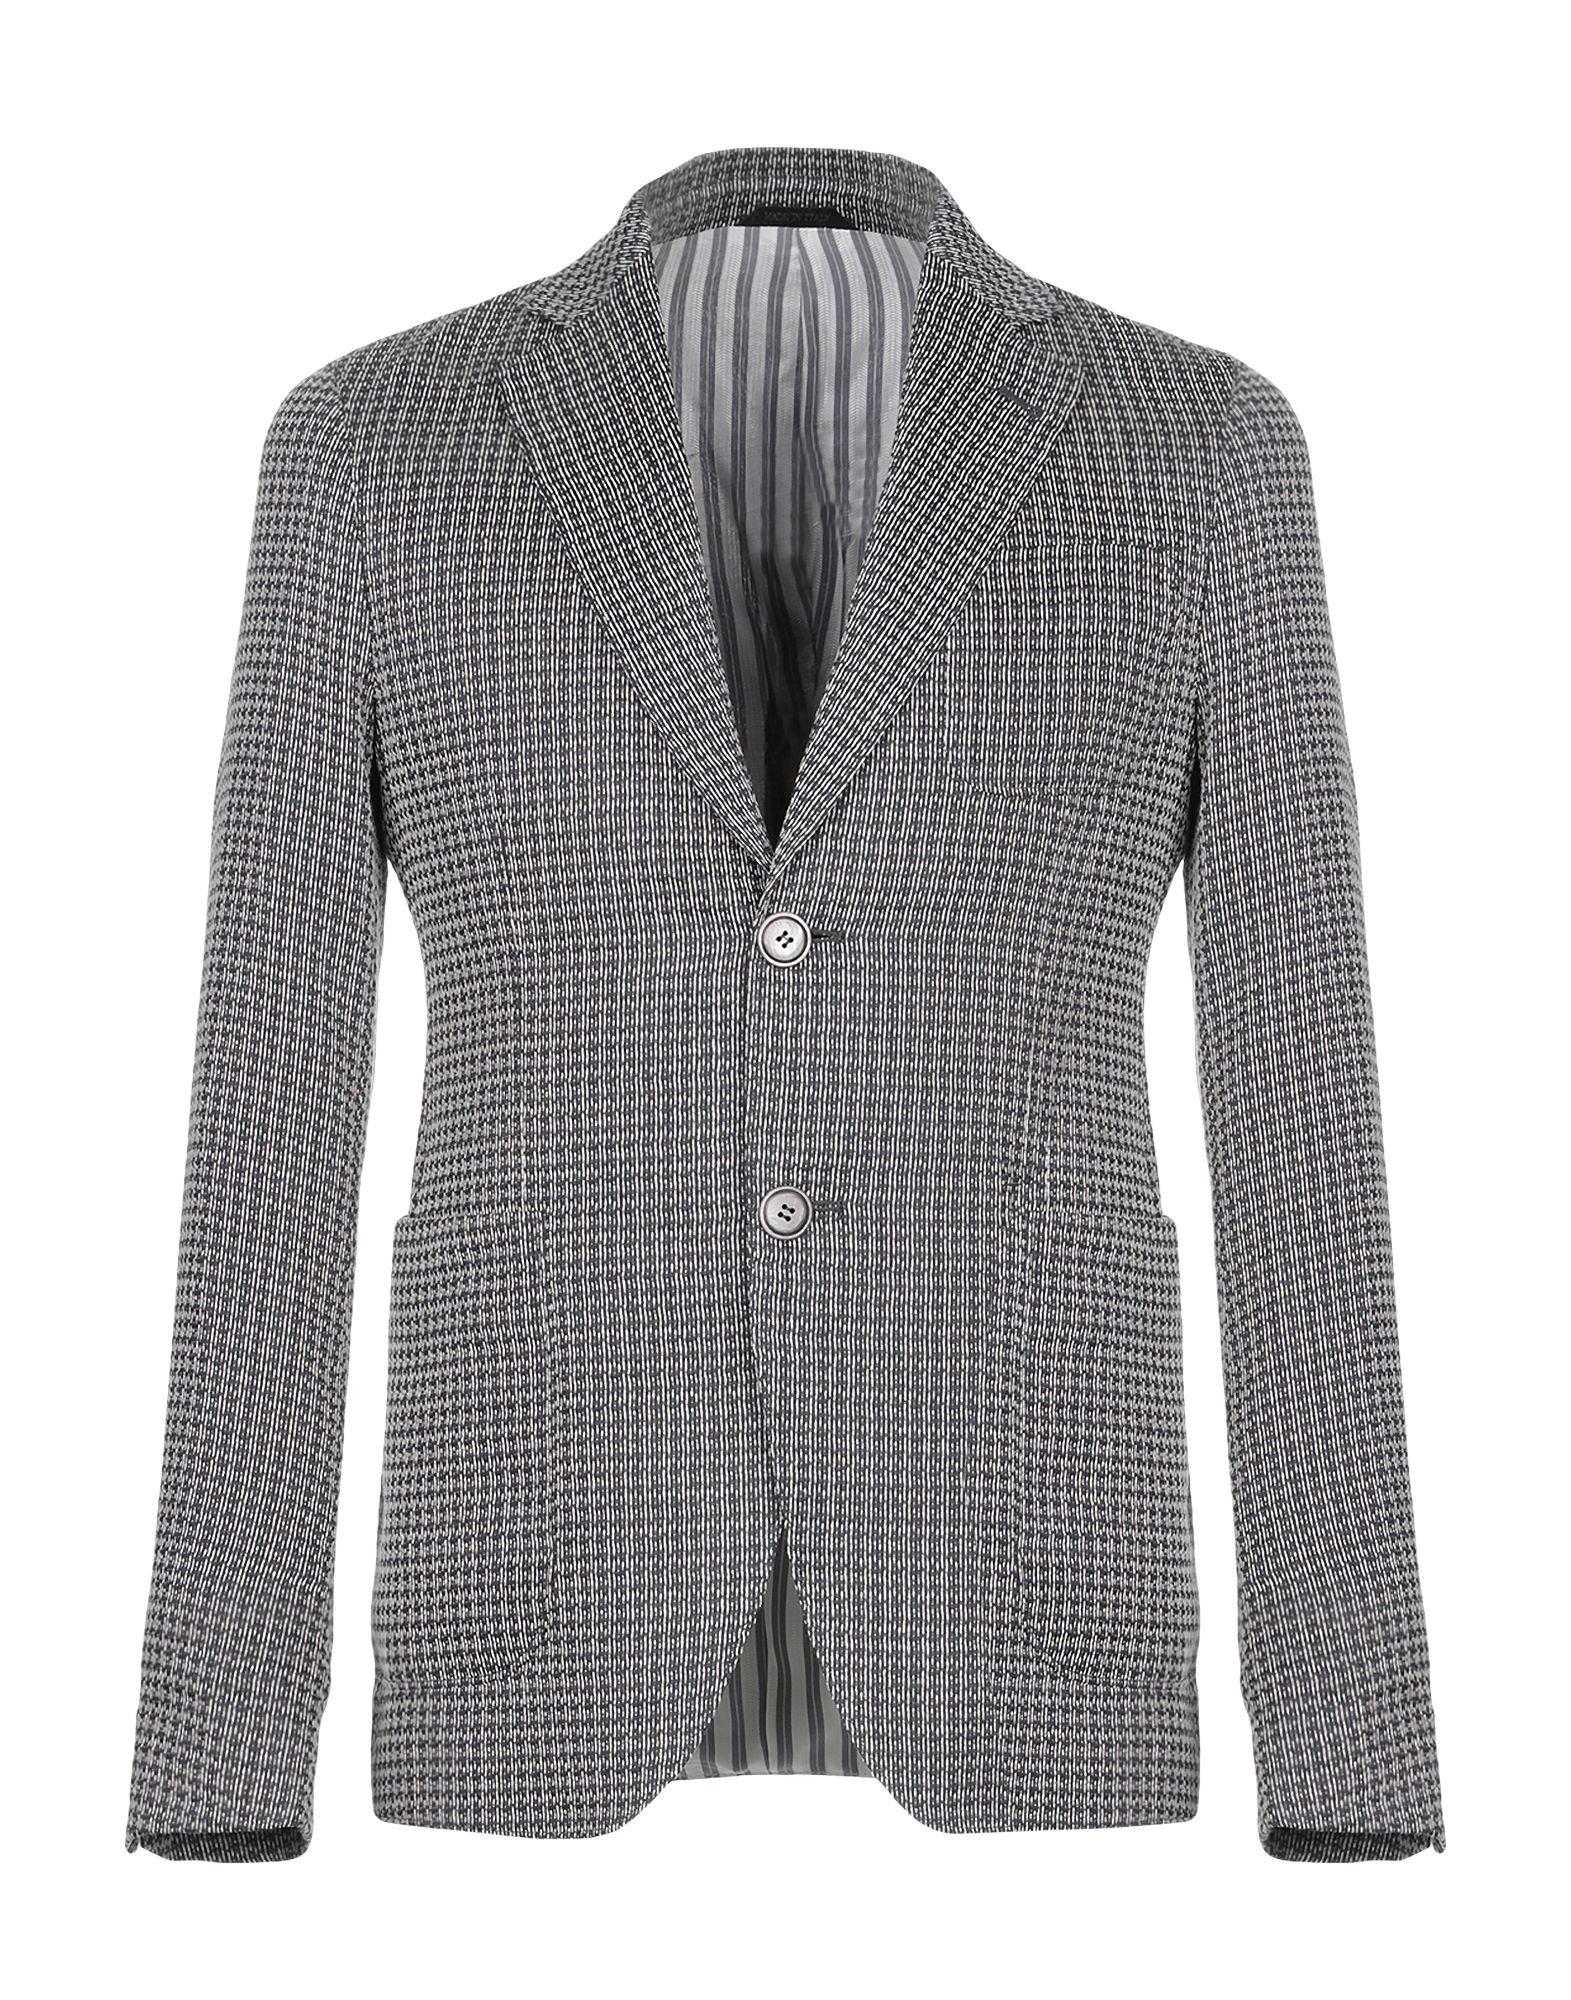 Giorgio Armani Linen Blazer in Grey (Gray) for Men - Lyst